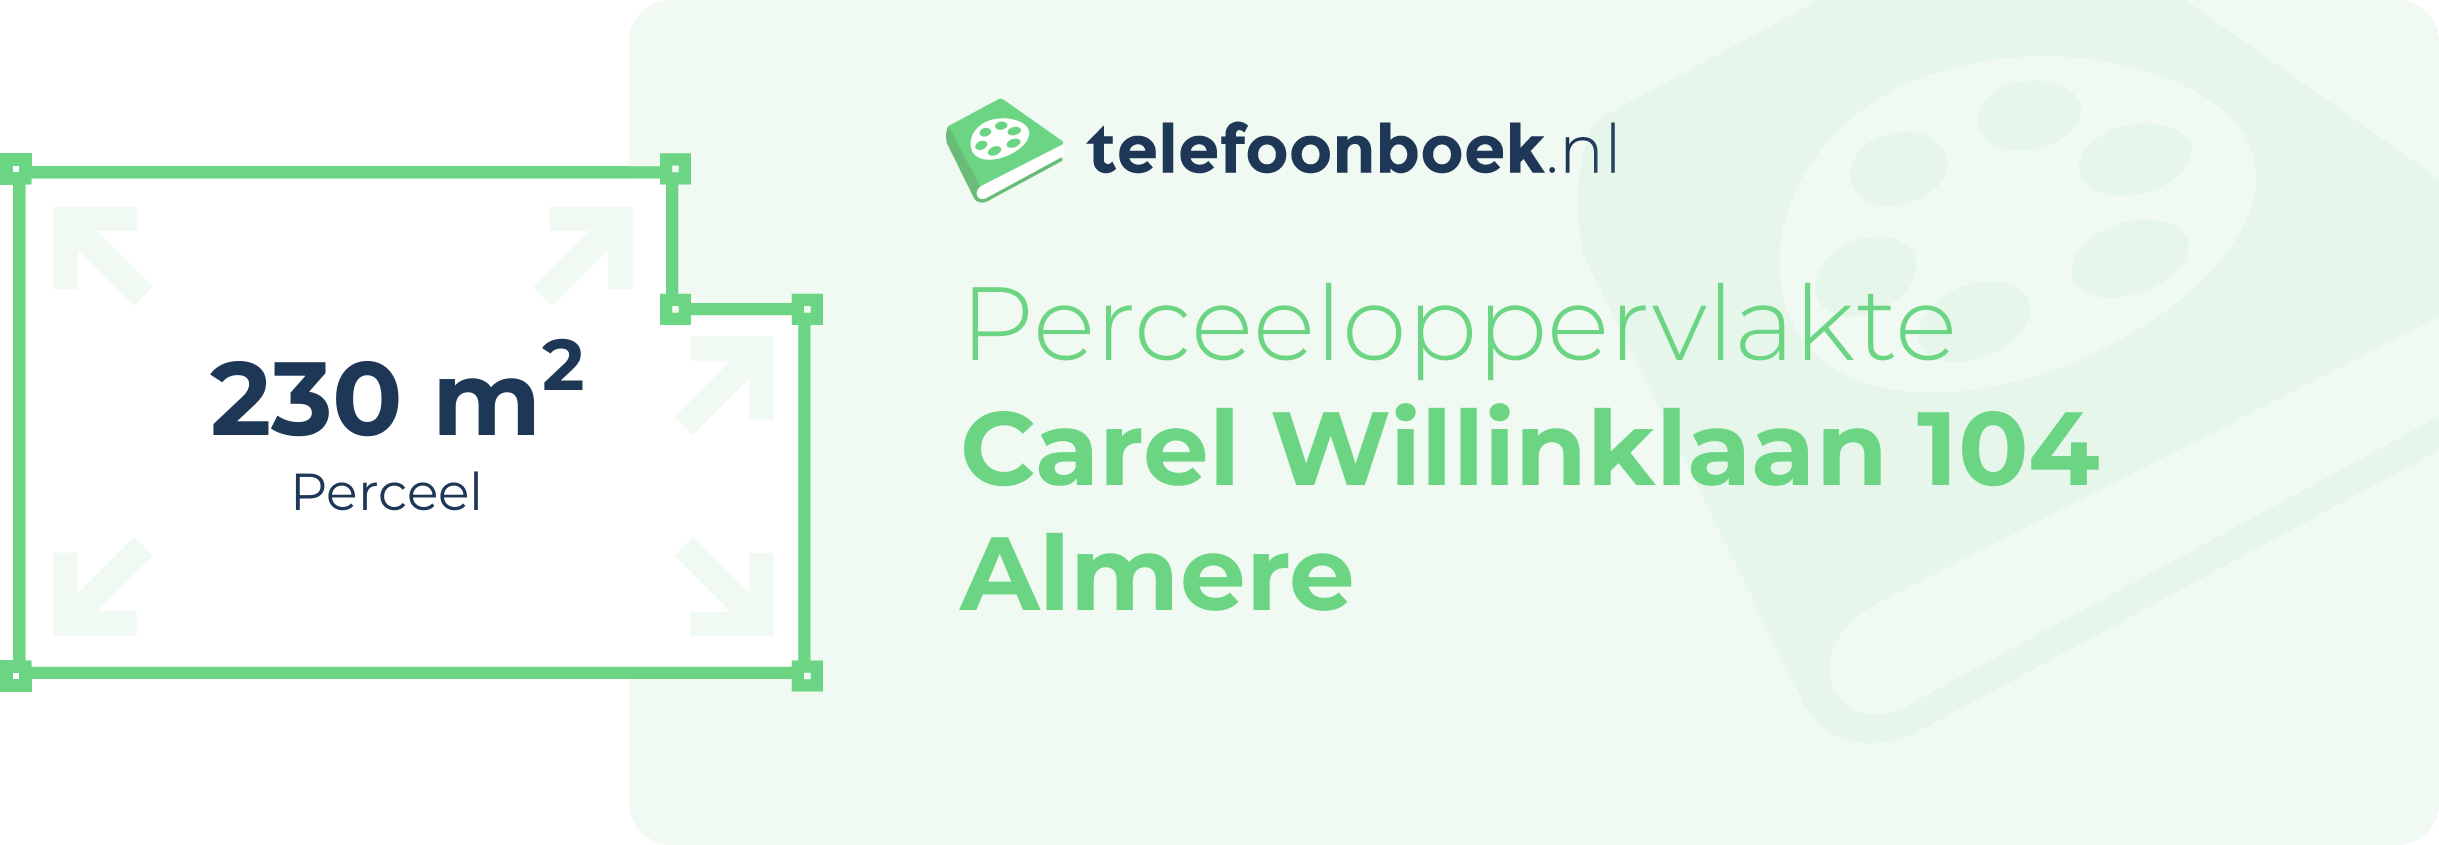 Perceeloppervlakte Carel Willinklaan 104 Almere